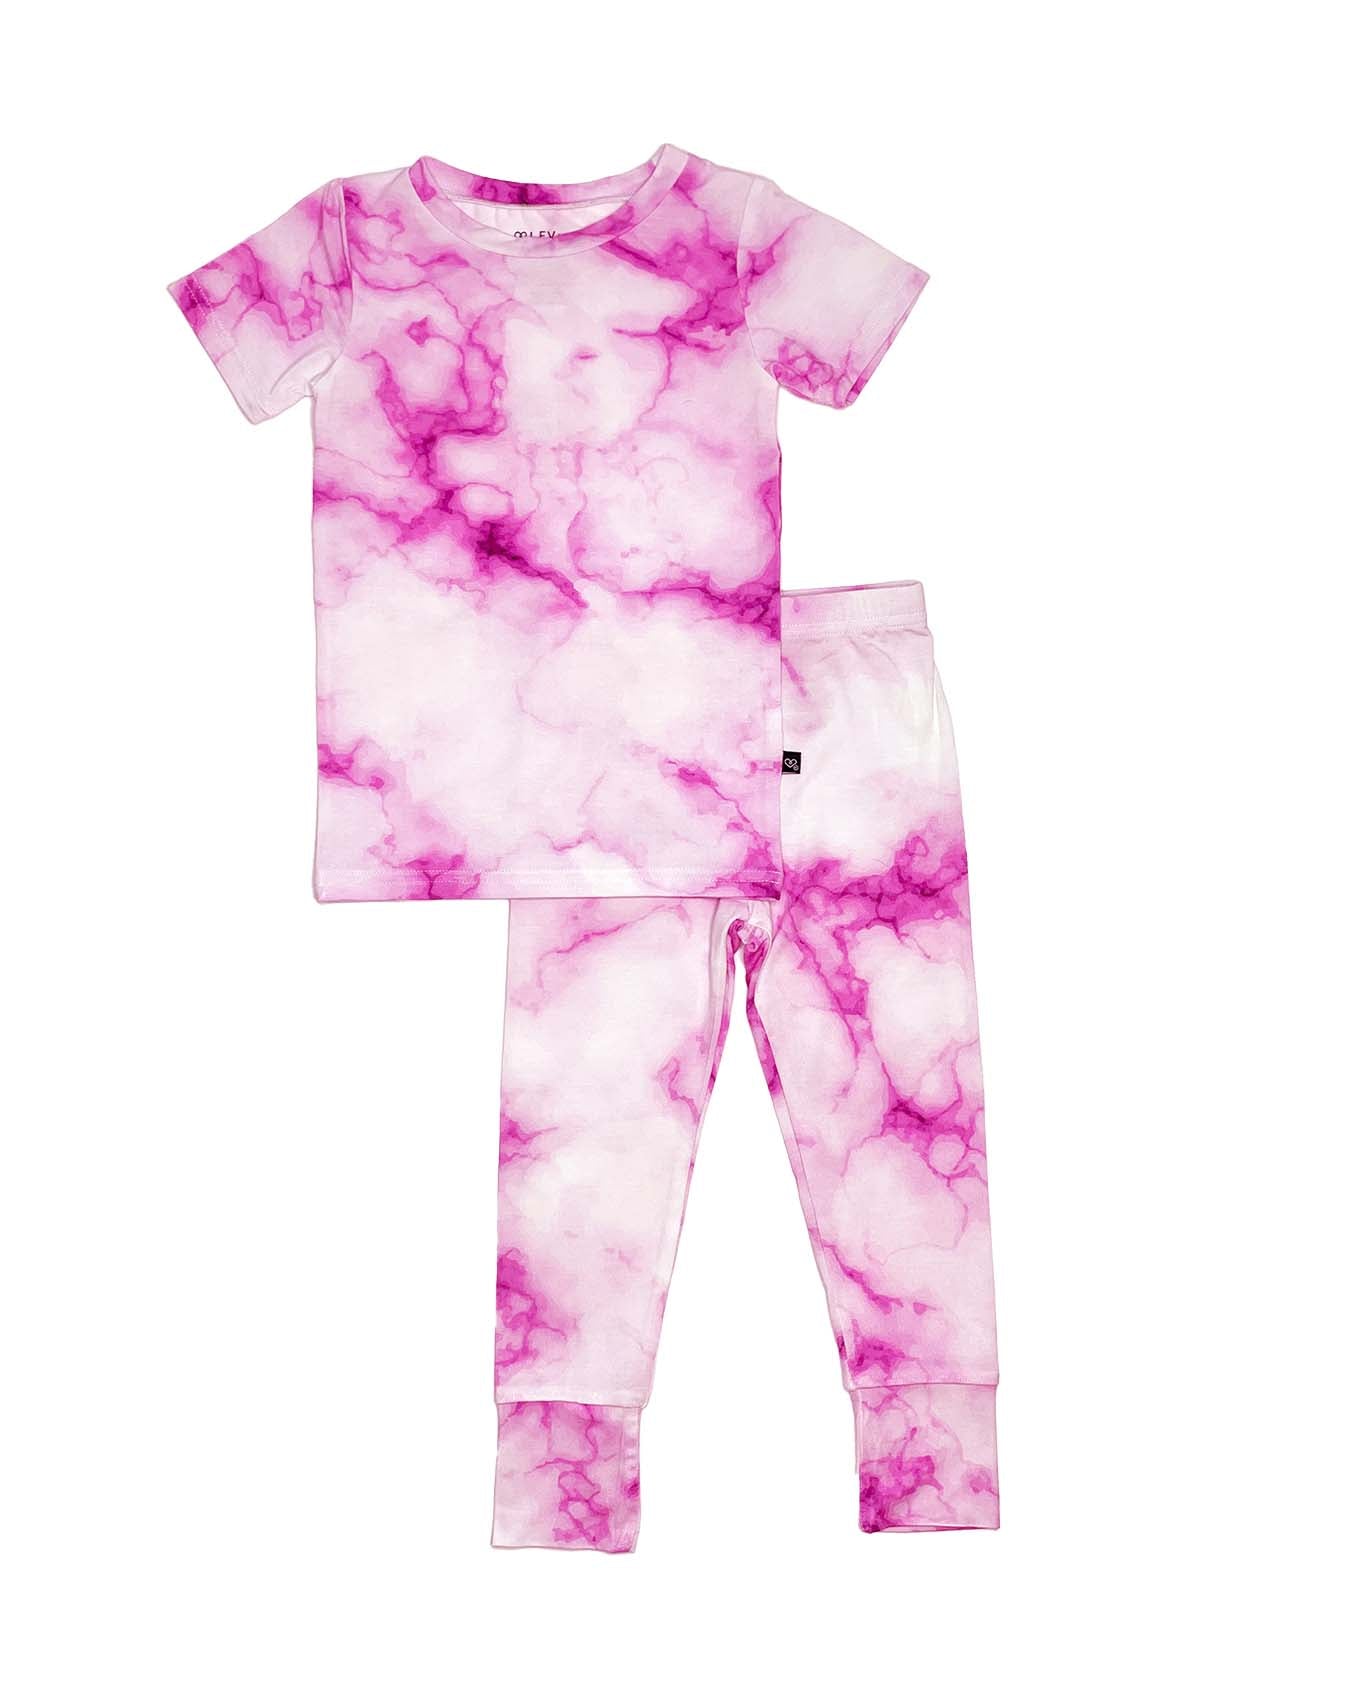 Pink Marble Pajama Set